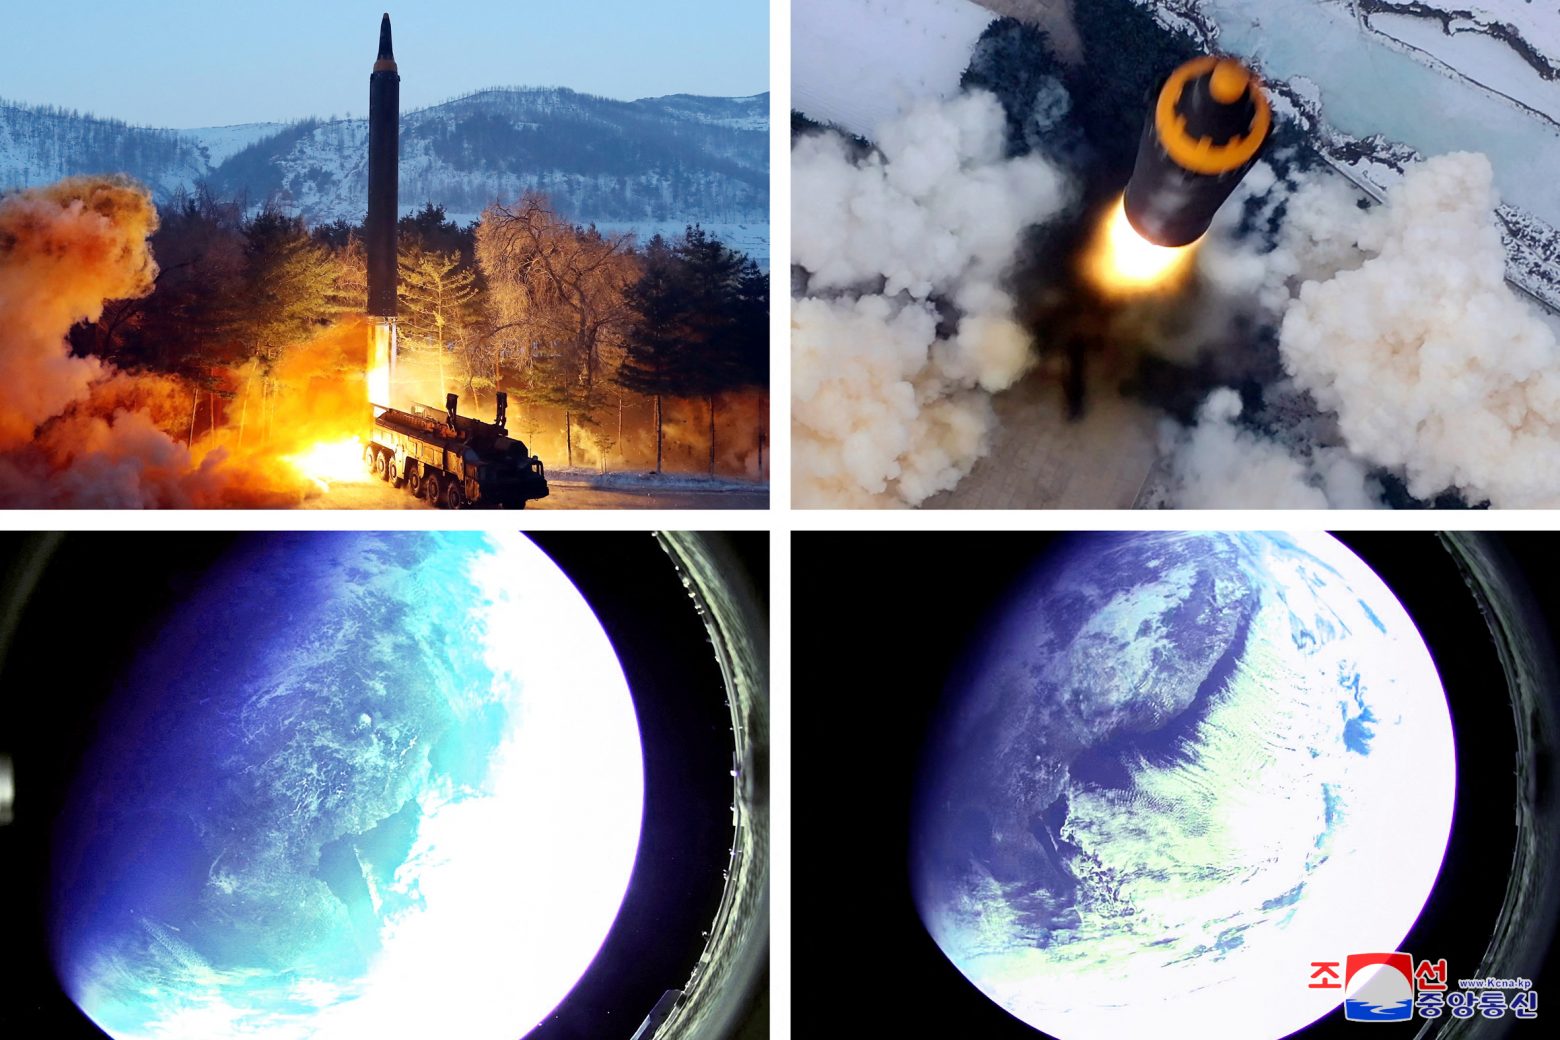 Βόρεια Κορέα: Φωτογραφίες από το Διάστημα μετέδωσε ο βαλλιστικός πύραυλος που εκτόξευσε η χώρα